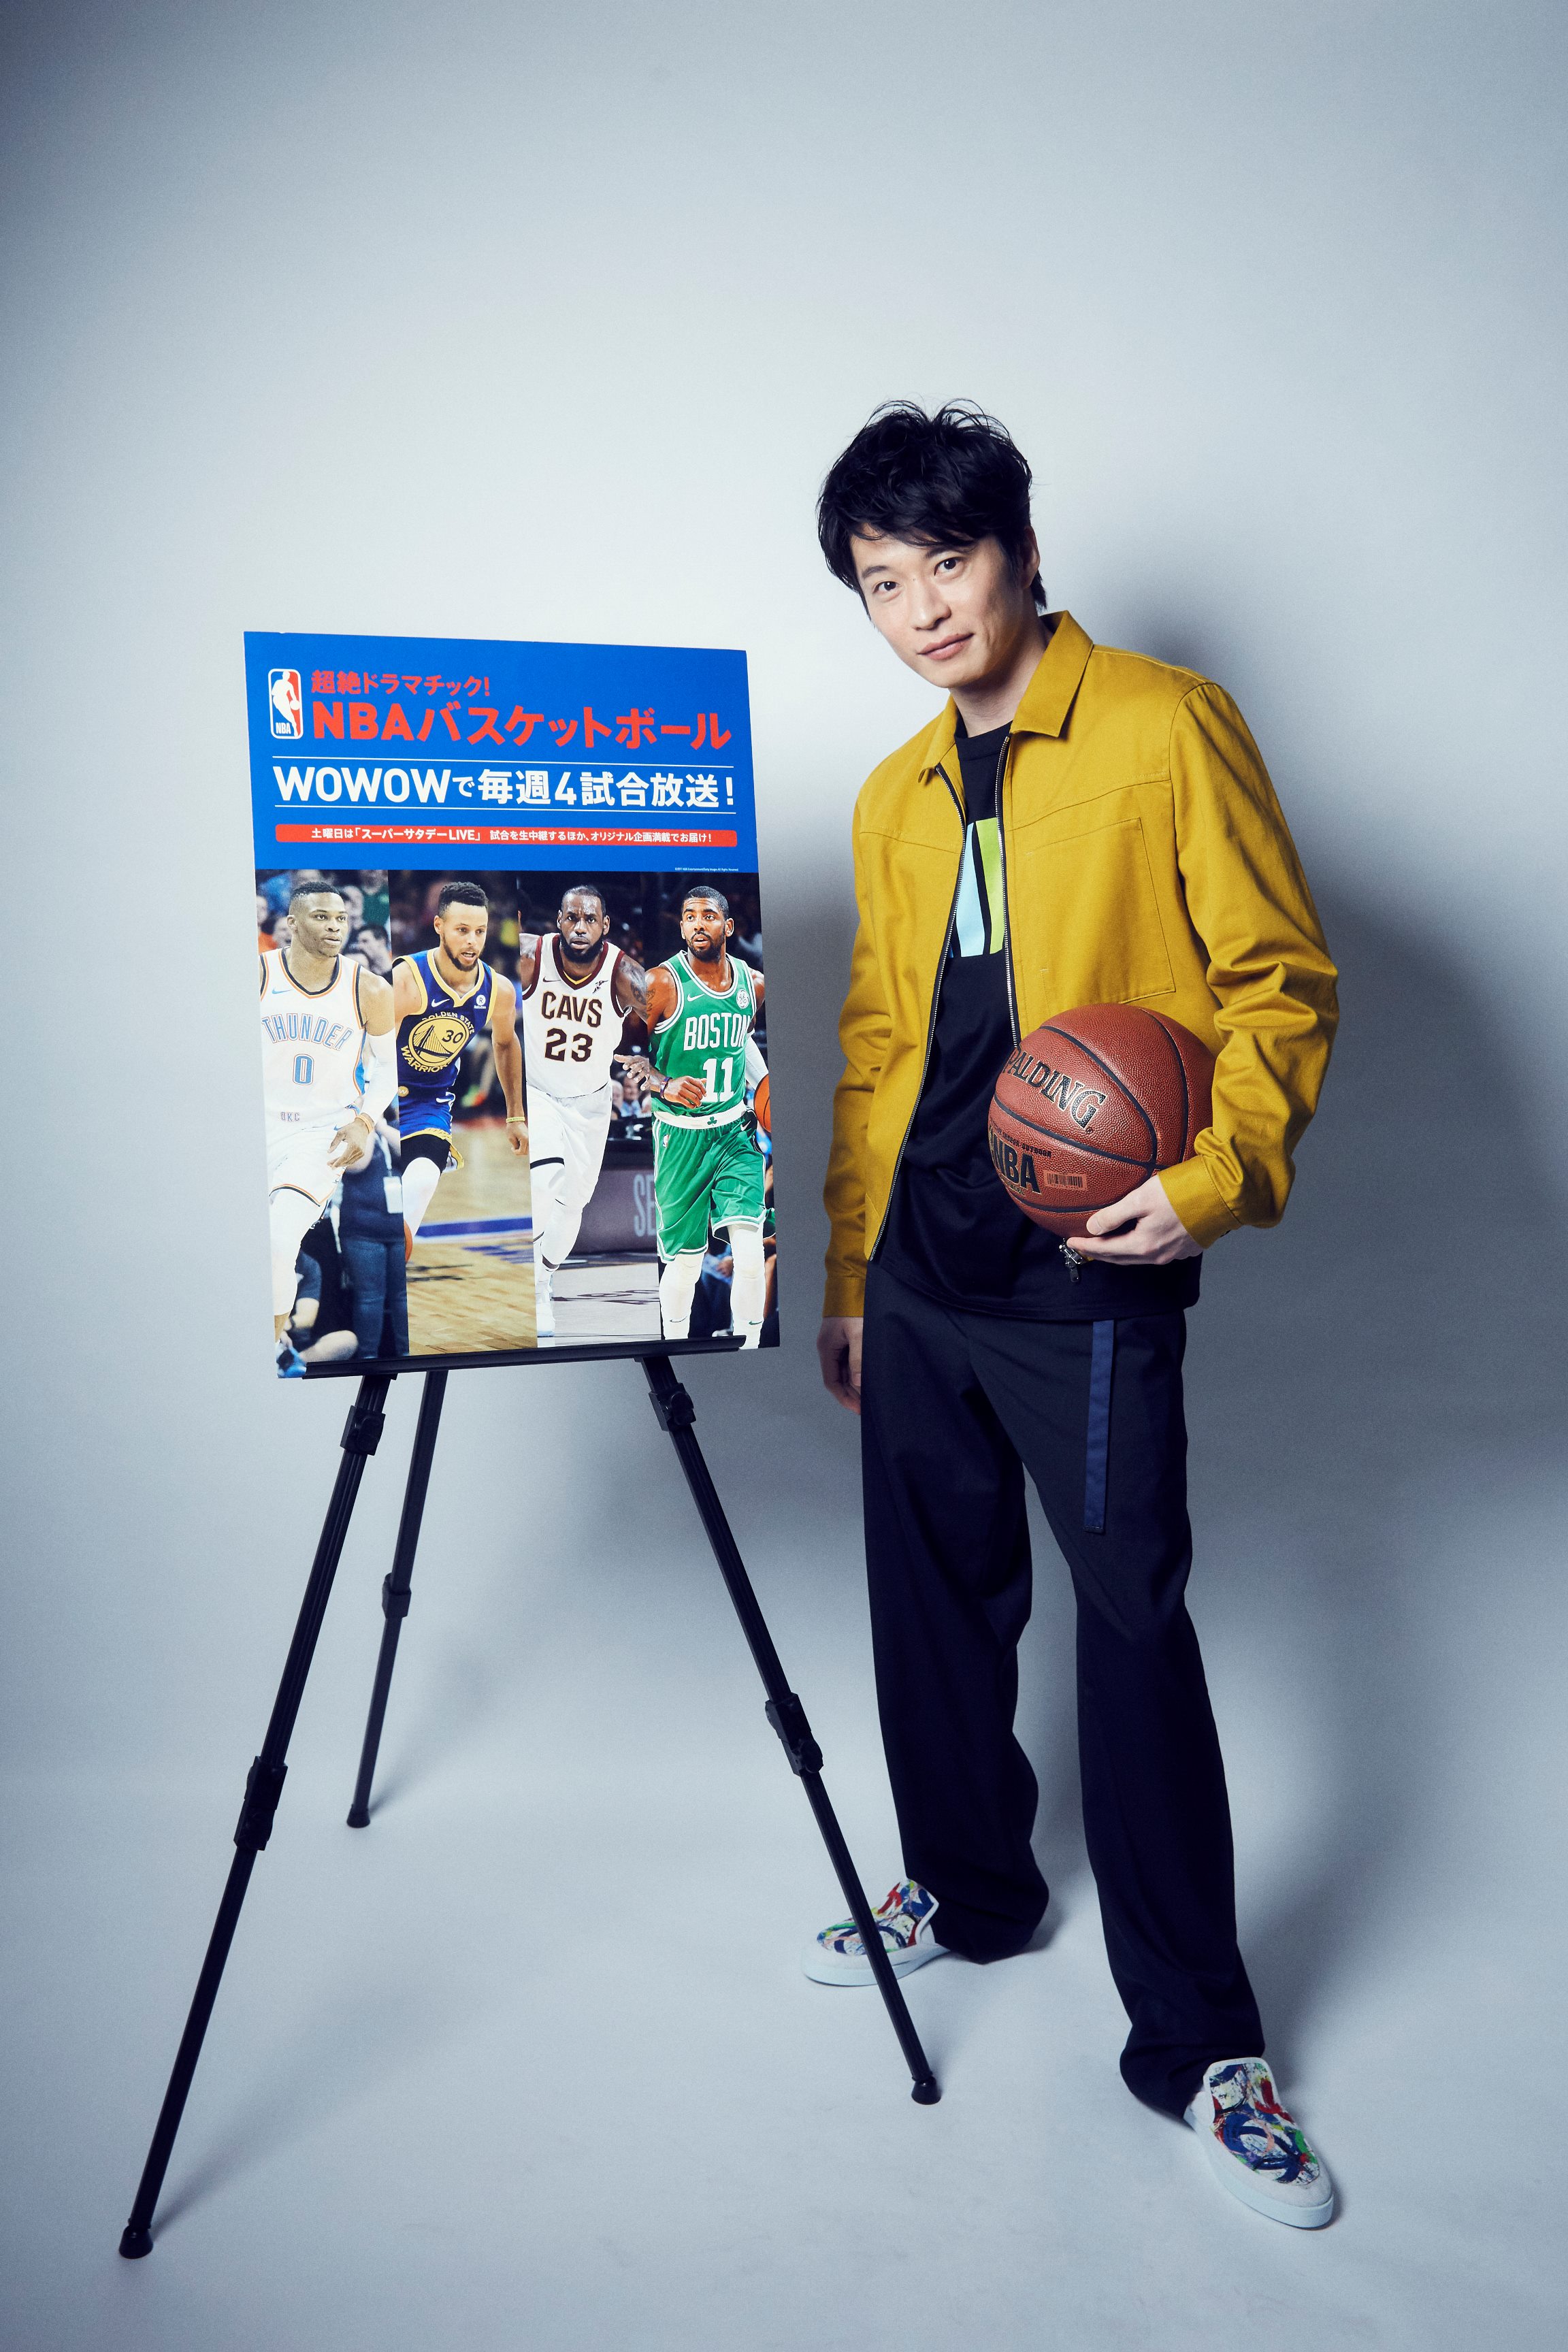 プレーオフは全ての面白さが凝縮されたレギュラーシーズンの集大成 田中 圭さんをwowowが独占取材 Nbaバスケットボール プレーオフは4 15 日 から放送 株式会社wowowのプレスリリース